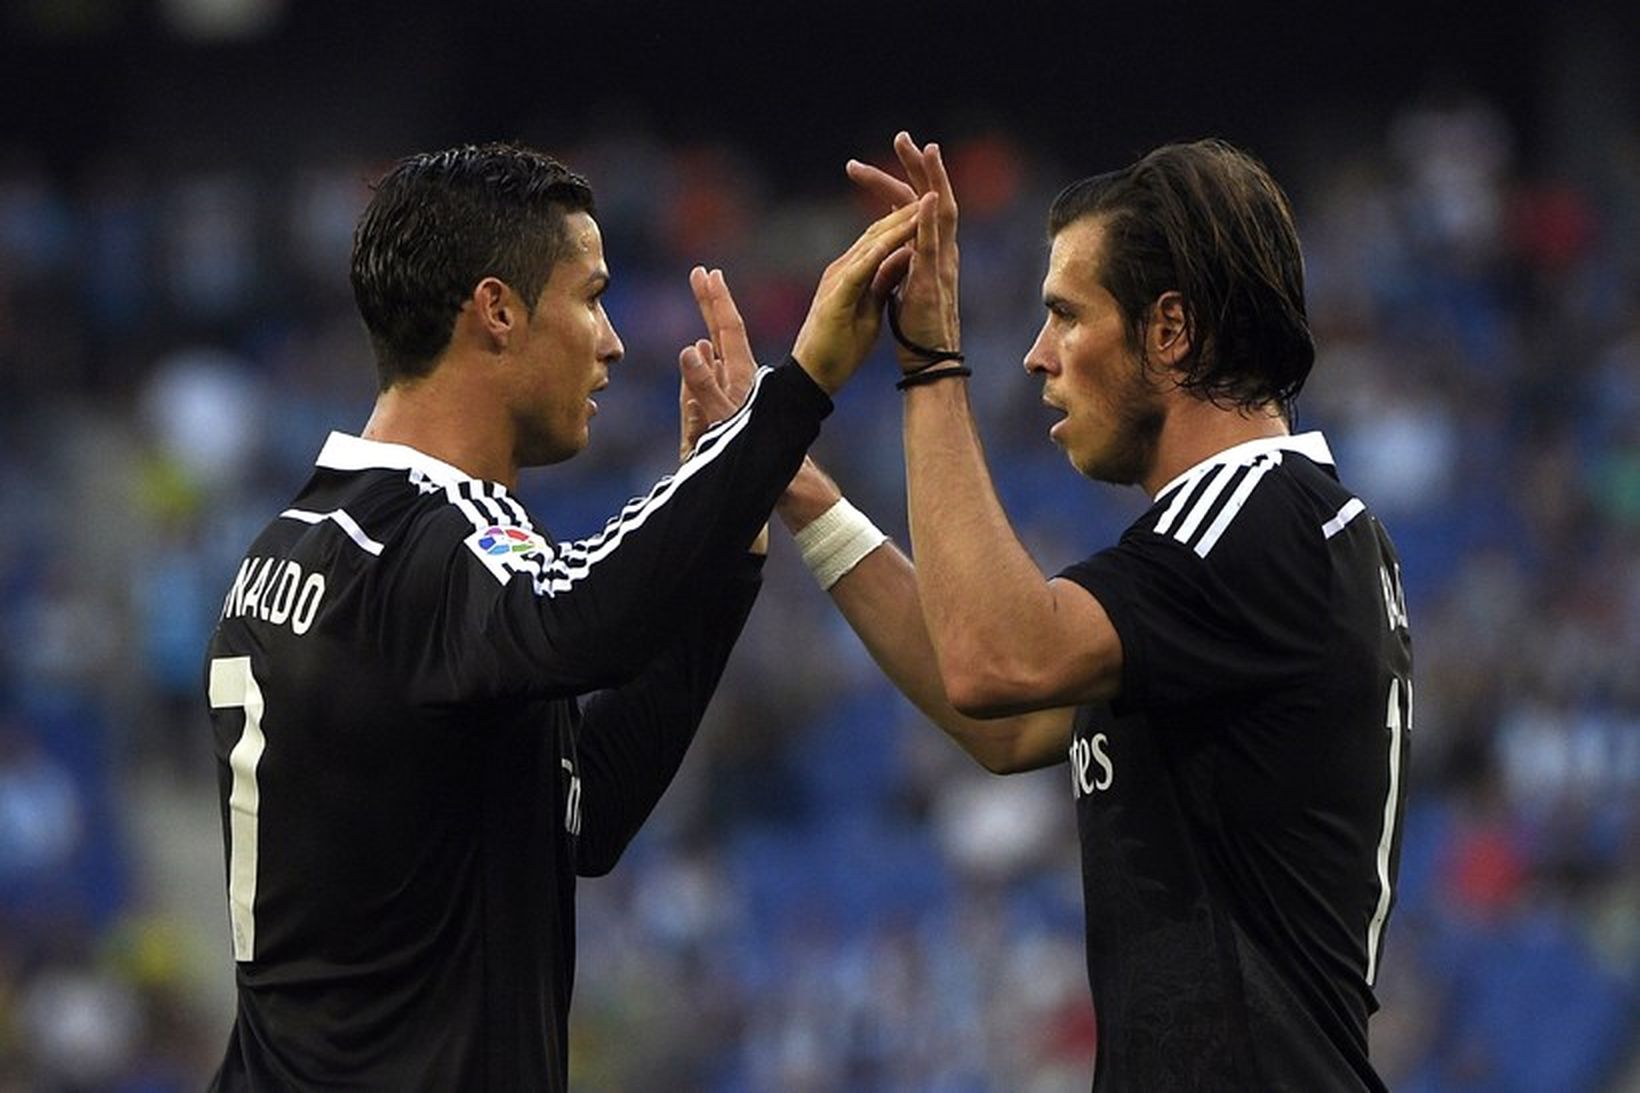 Cristiano Ronaldo skoraði þrennu gegn Getafe í kvöld.